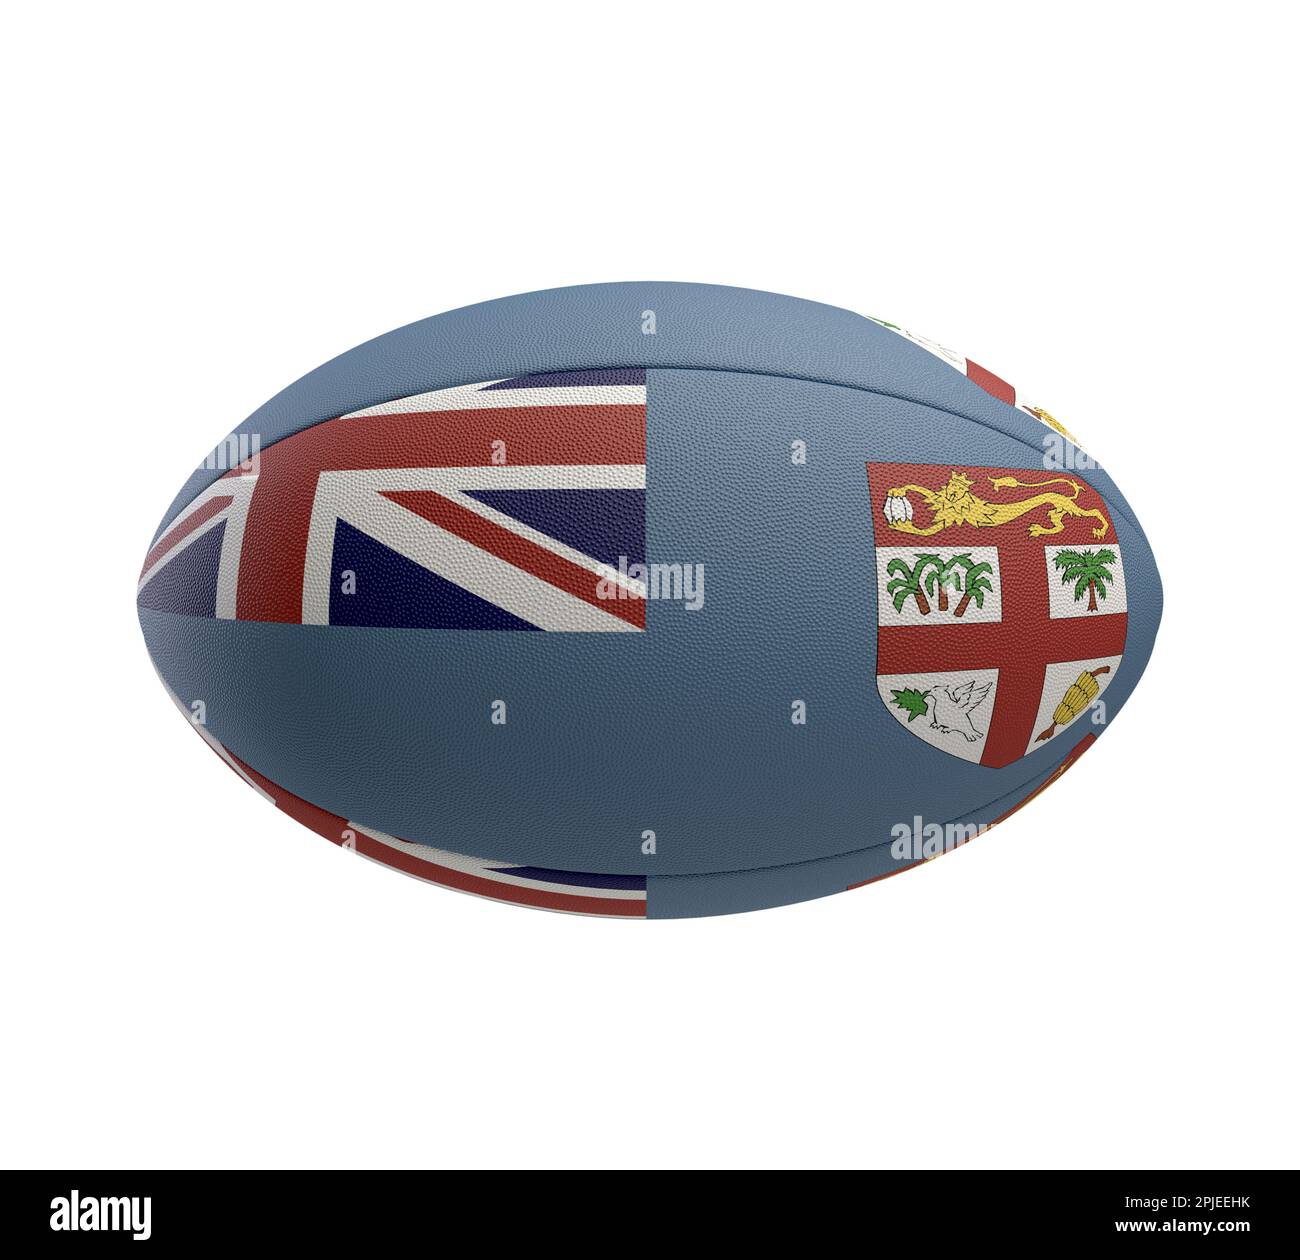 Ein weiß strukturierter Rugby-Ball mit Farbdesign, das die Fidschi-Nationalflagge auf einem isolierten Hintergrund darstellt - 3D-Rendering Stockfoto